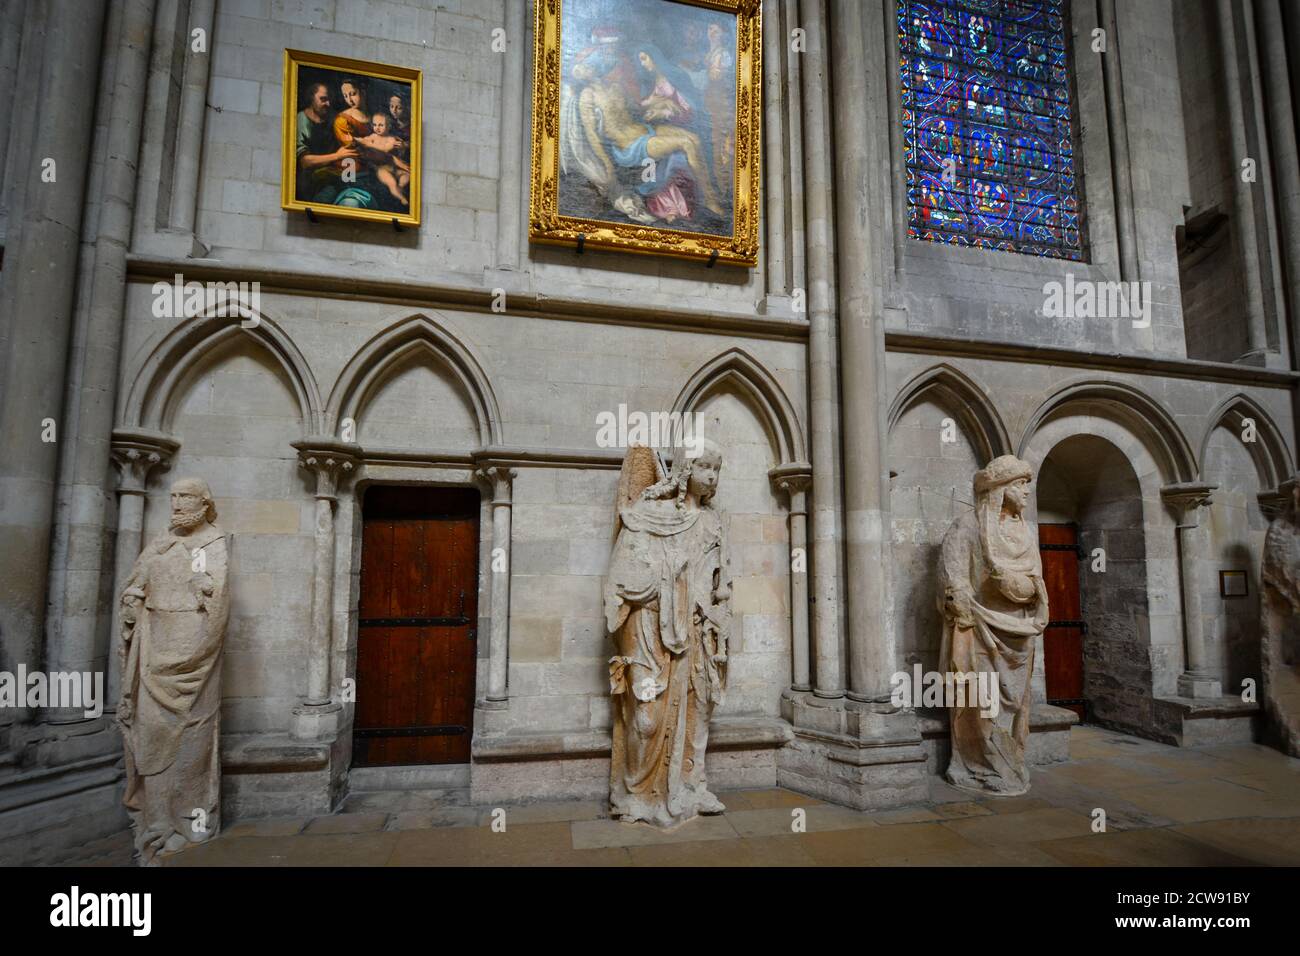 Die ambulante des Inneren der Kathedrale von Rouen in Rouen Frankreich mit Glasmalereien, Statuen, Gemälde aus der Renaissance Stockfoto